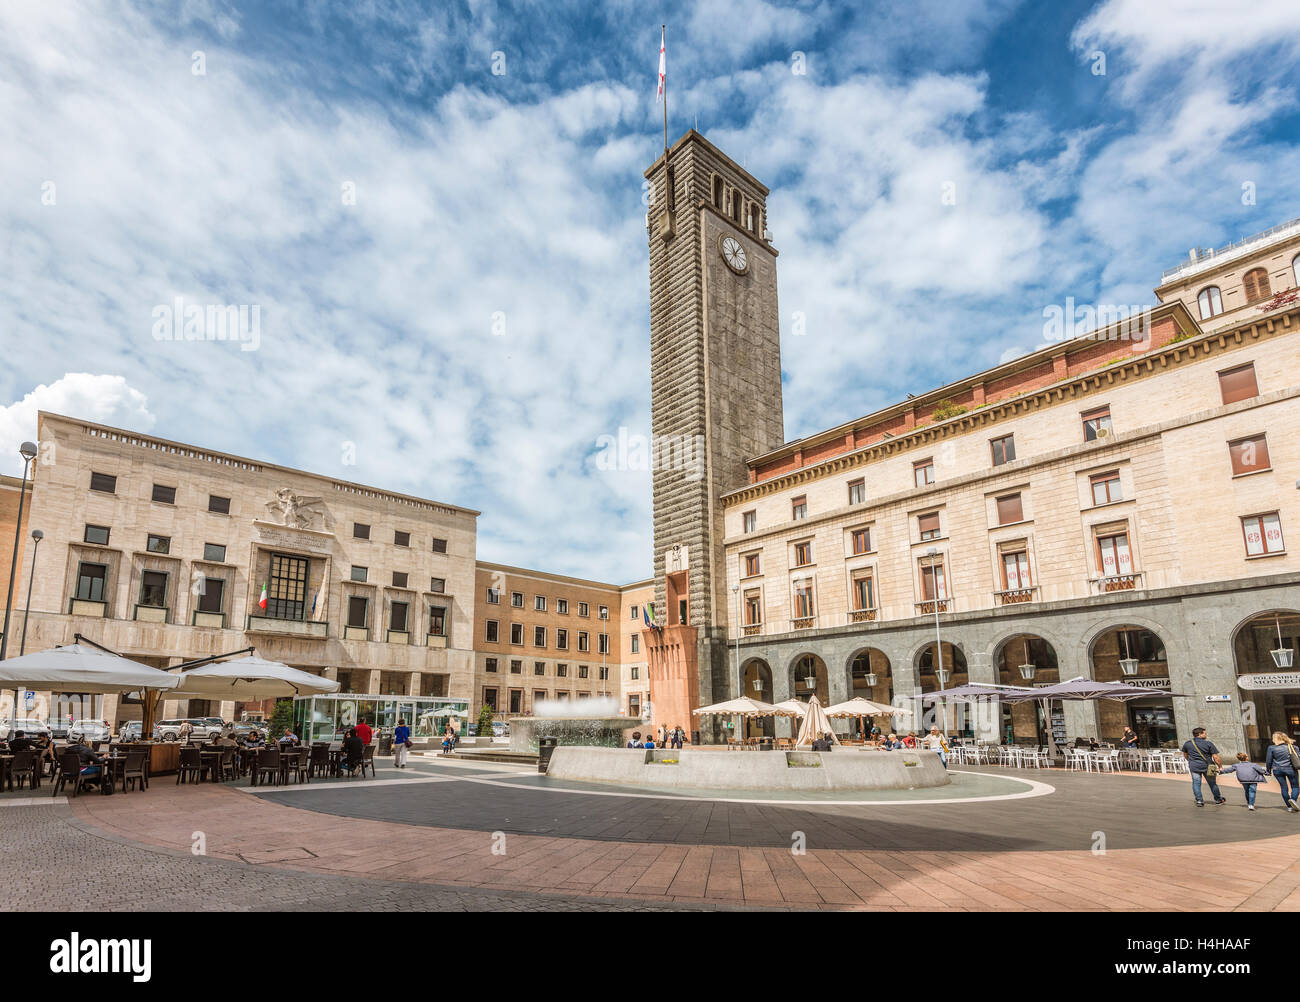 Piazza della Repubblica, Varese, Italy Stock Photo - Alamy